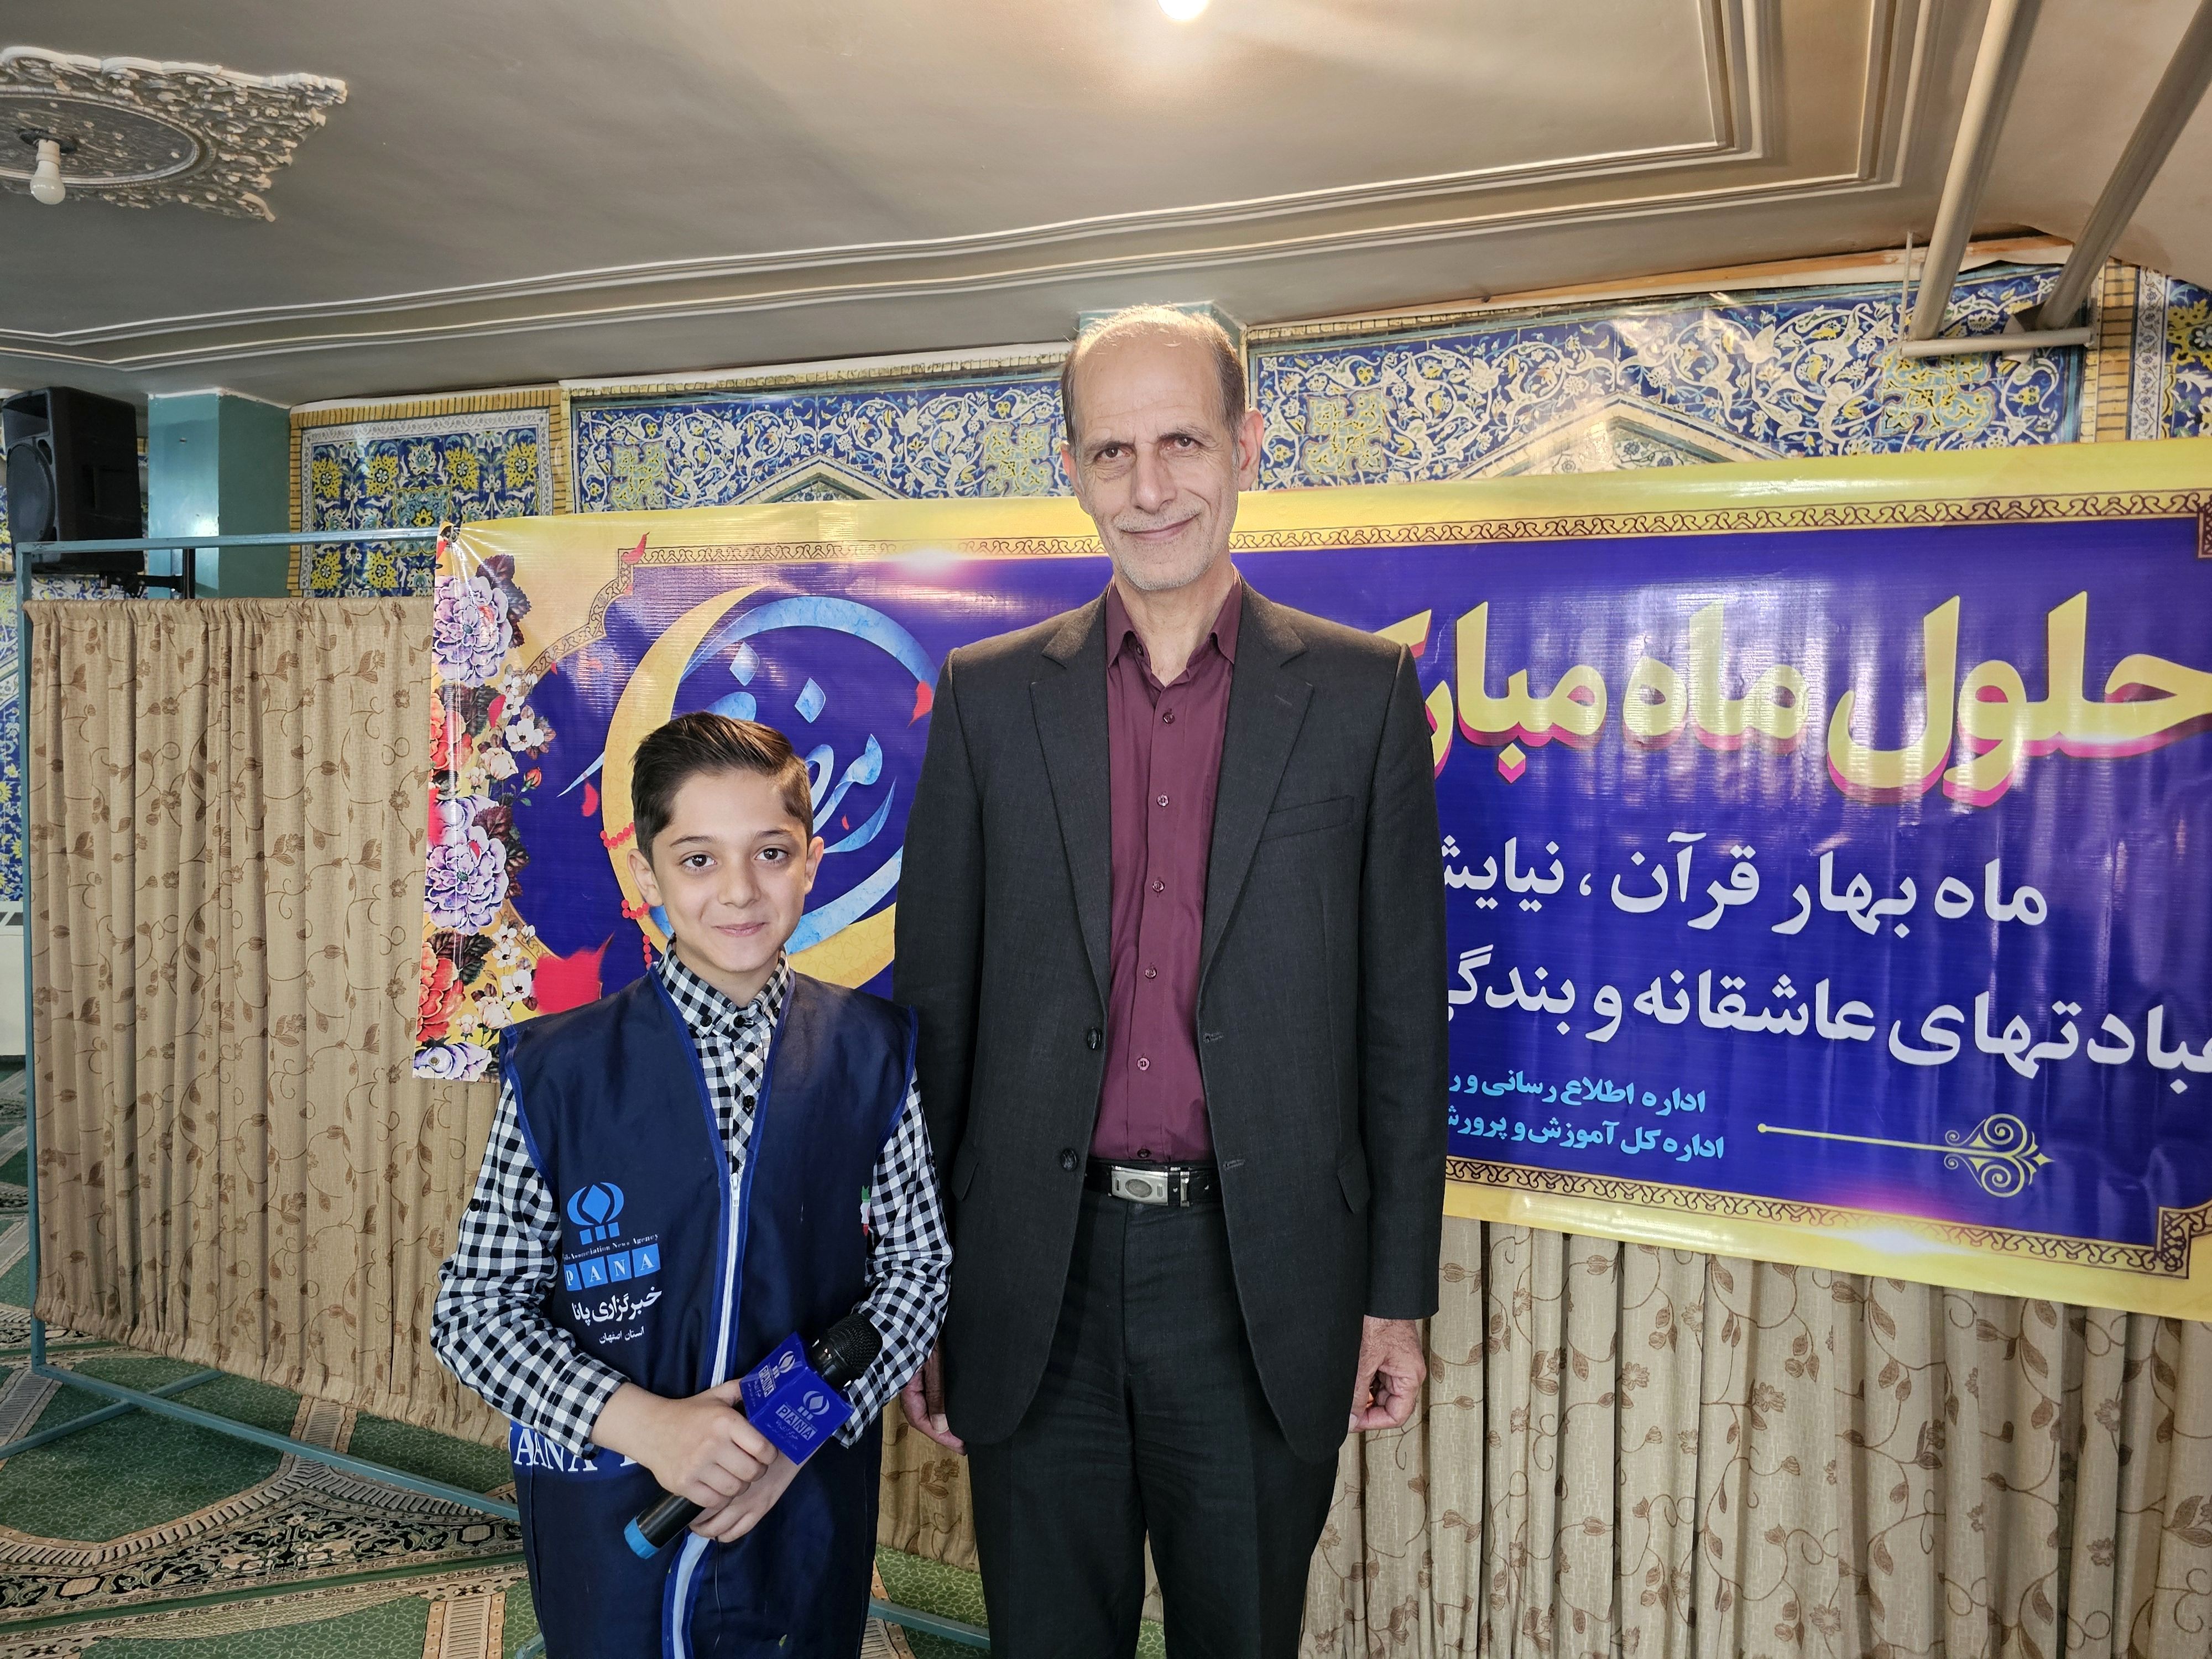 آموزش و پرورش استان اصفهان در سال جدید توجه ویژه به مسائل تربیتی و نماز ، آموزش و پژوهش  دارد